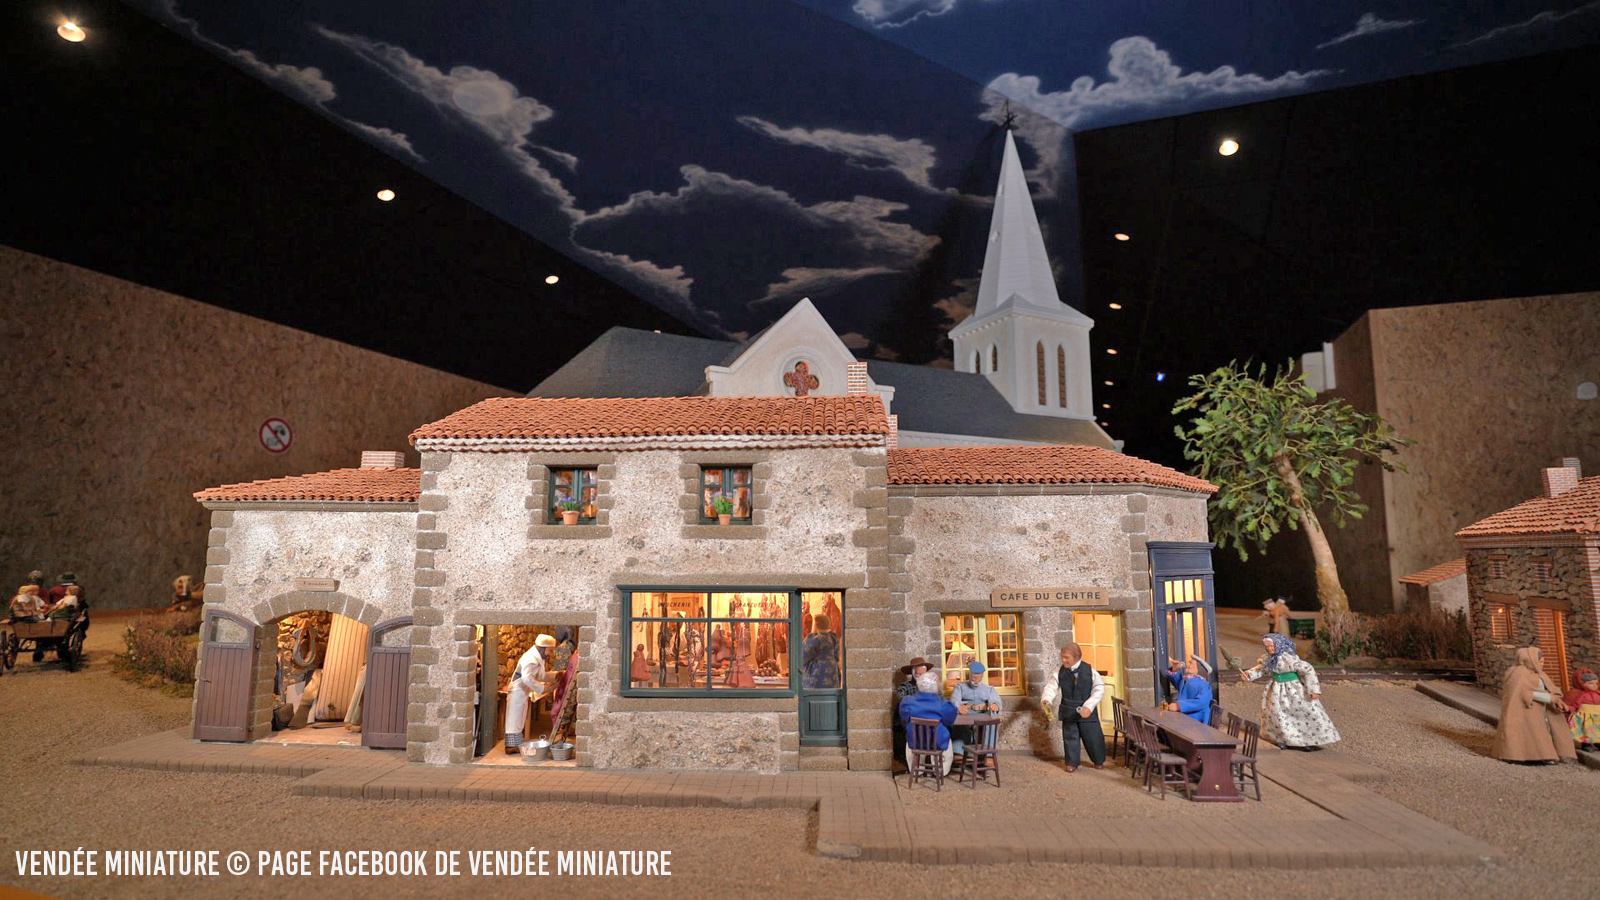 Découvrez l'histoire de notre village miniature en Vendée